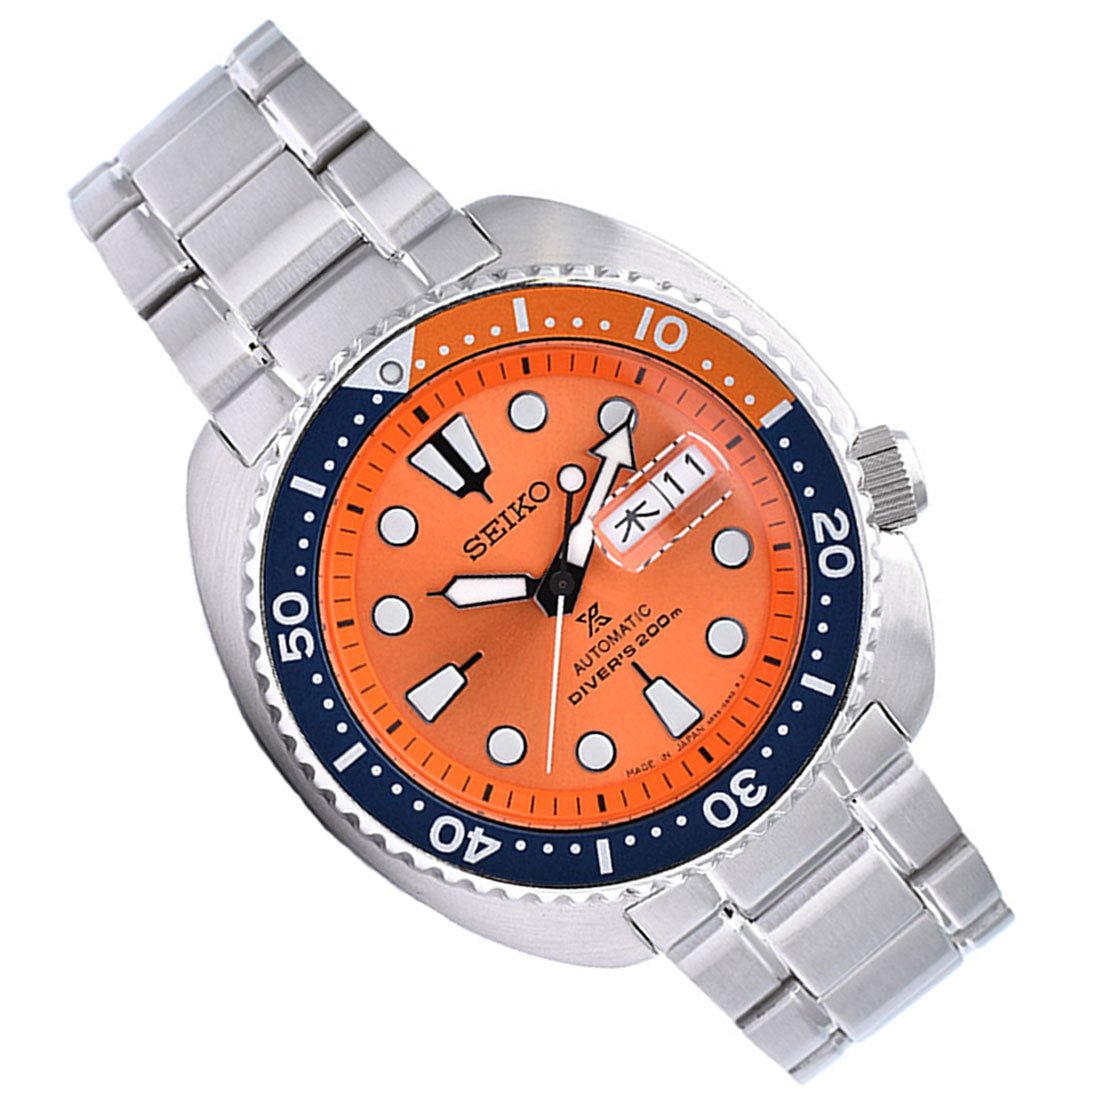 Seiko Prospex Automatic Orange Turtle Divers JDM Watch SBDY023 -Seiko